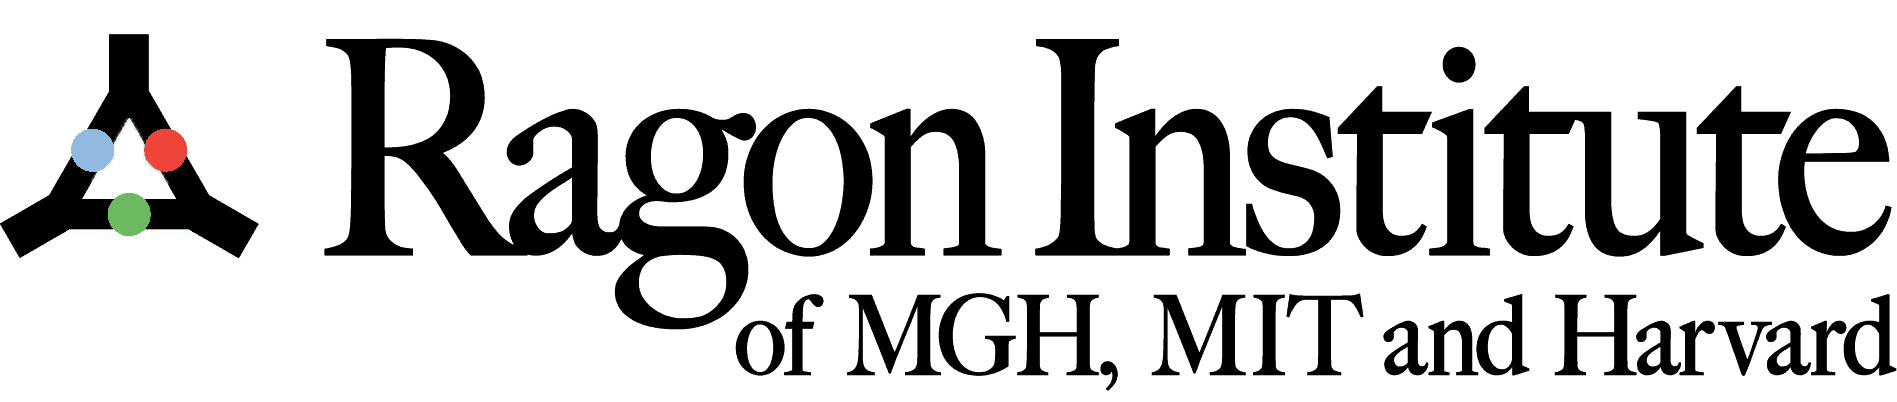 Ragon Institute Logo